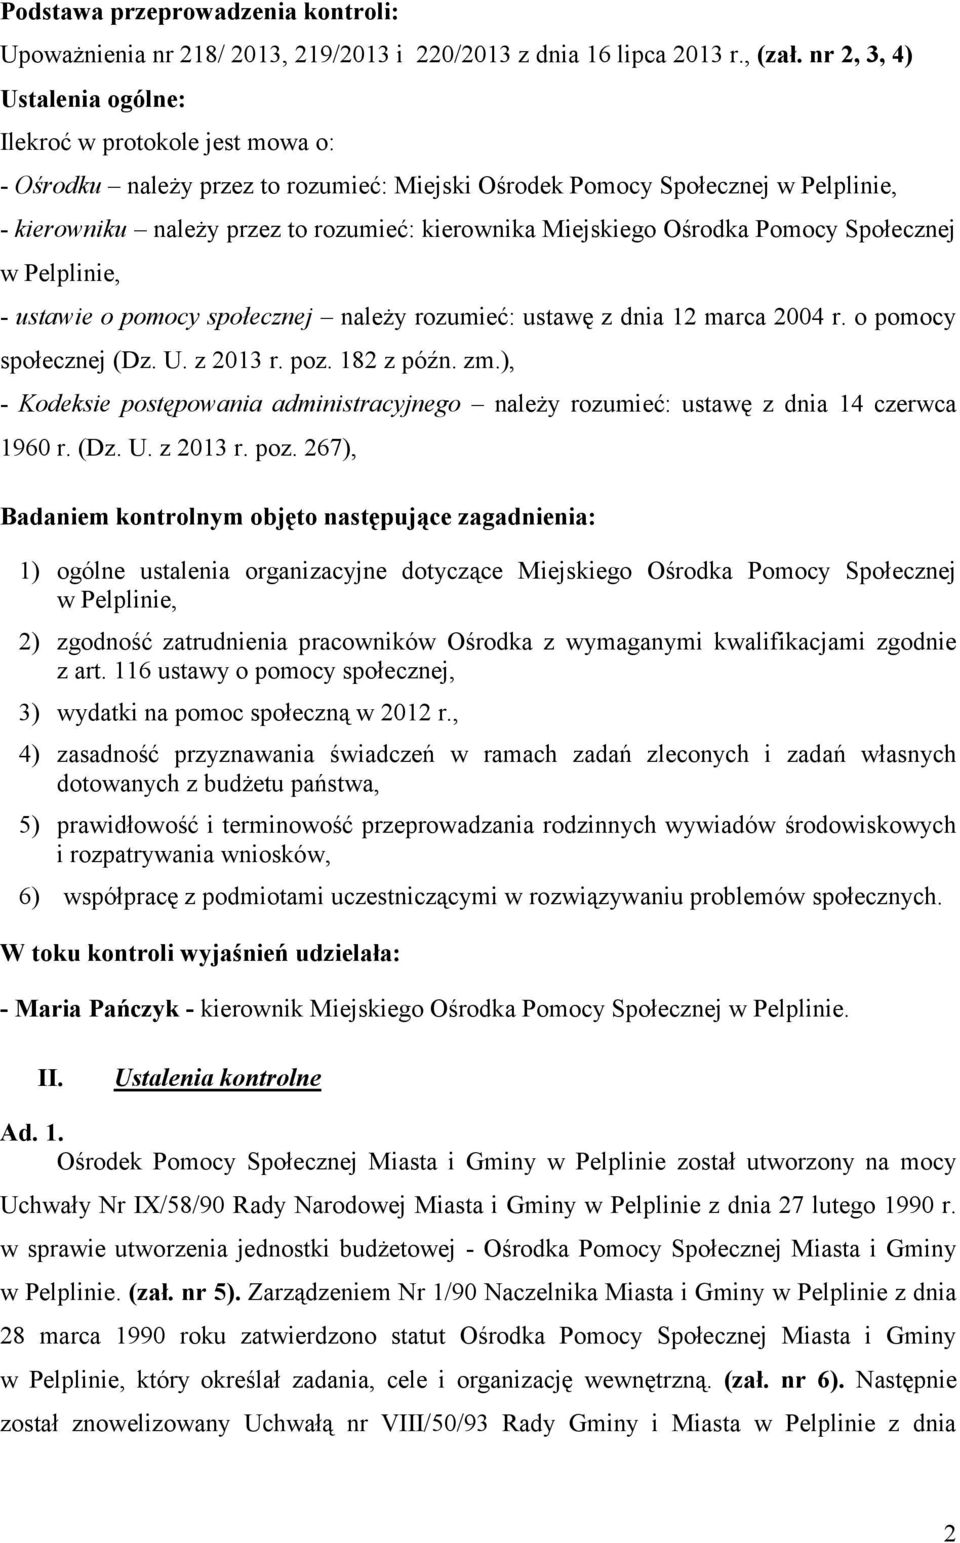 Miejskiego Ośrodka Pomocy Społecznej w Pelplinie, - ustawie o pomocy społecznej należy rozumieć: ustawę z dnia 12 marca 2004 r. o pomocy społecznej (Dz. U. z 2013 r. poz. 182 z późn. zm.